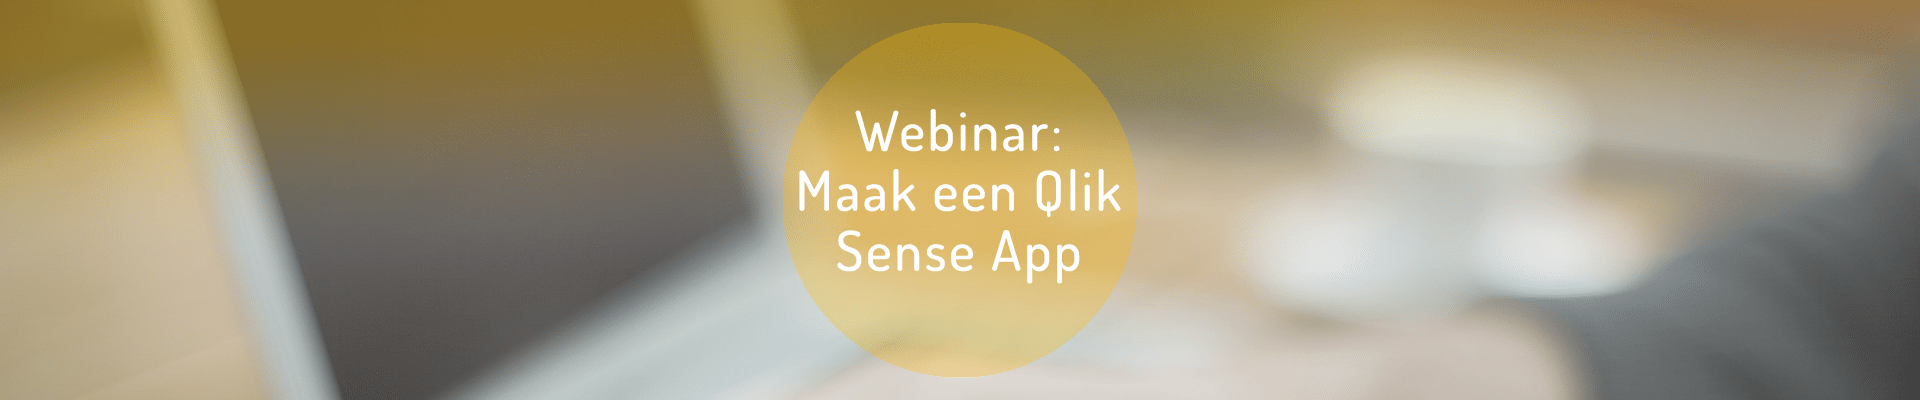 qlik sense, webinar qlik, qlik on demand webinar, qlik sense app, qlik sense app how to, qlik sense app hulp,qlik sense app help, e-mergo.nl